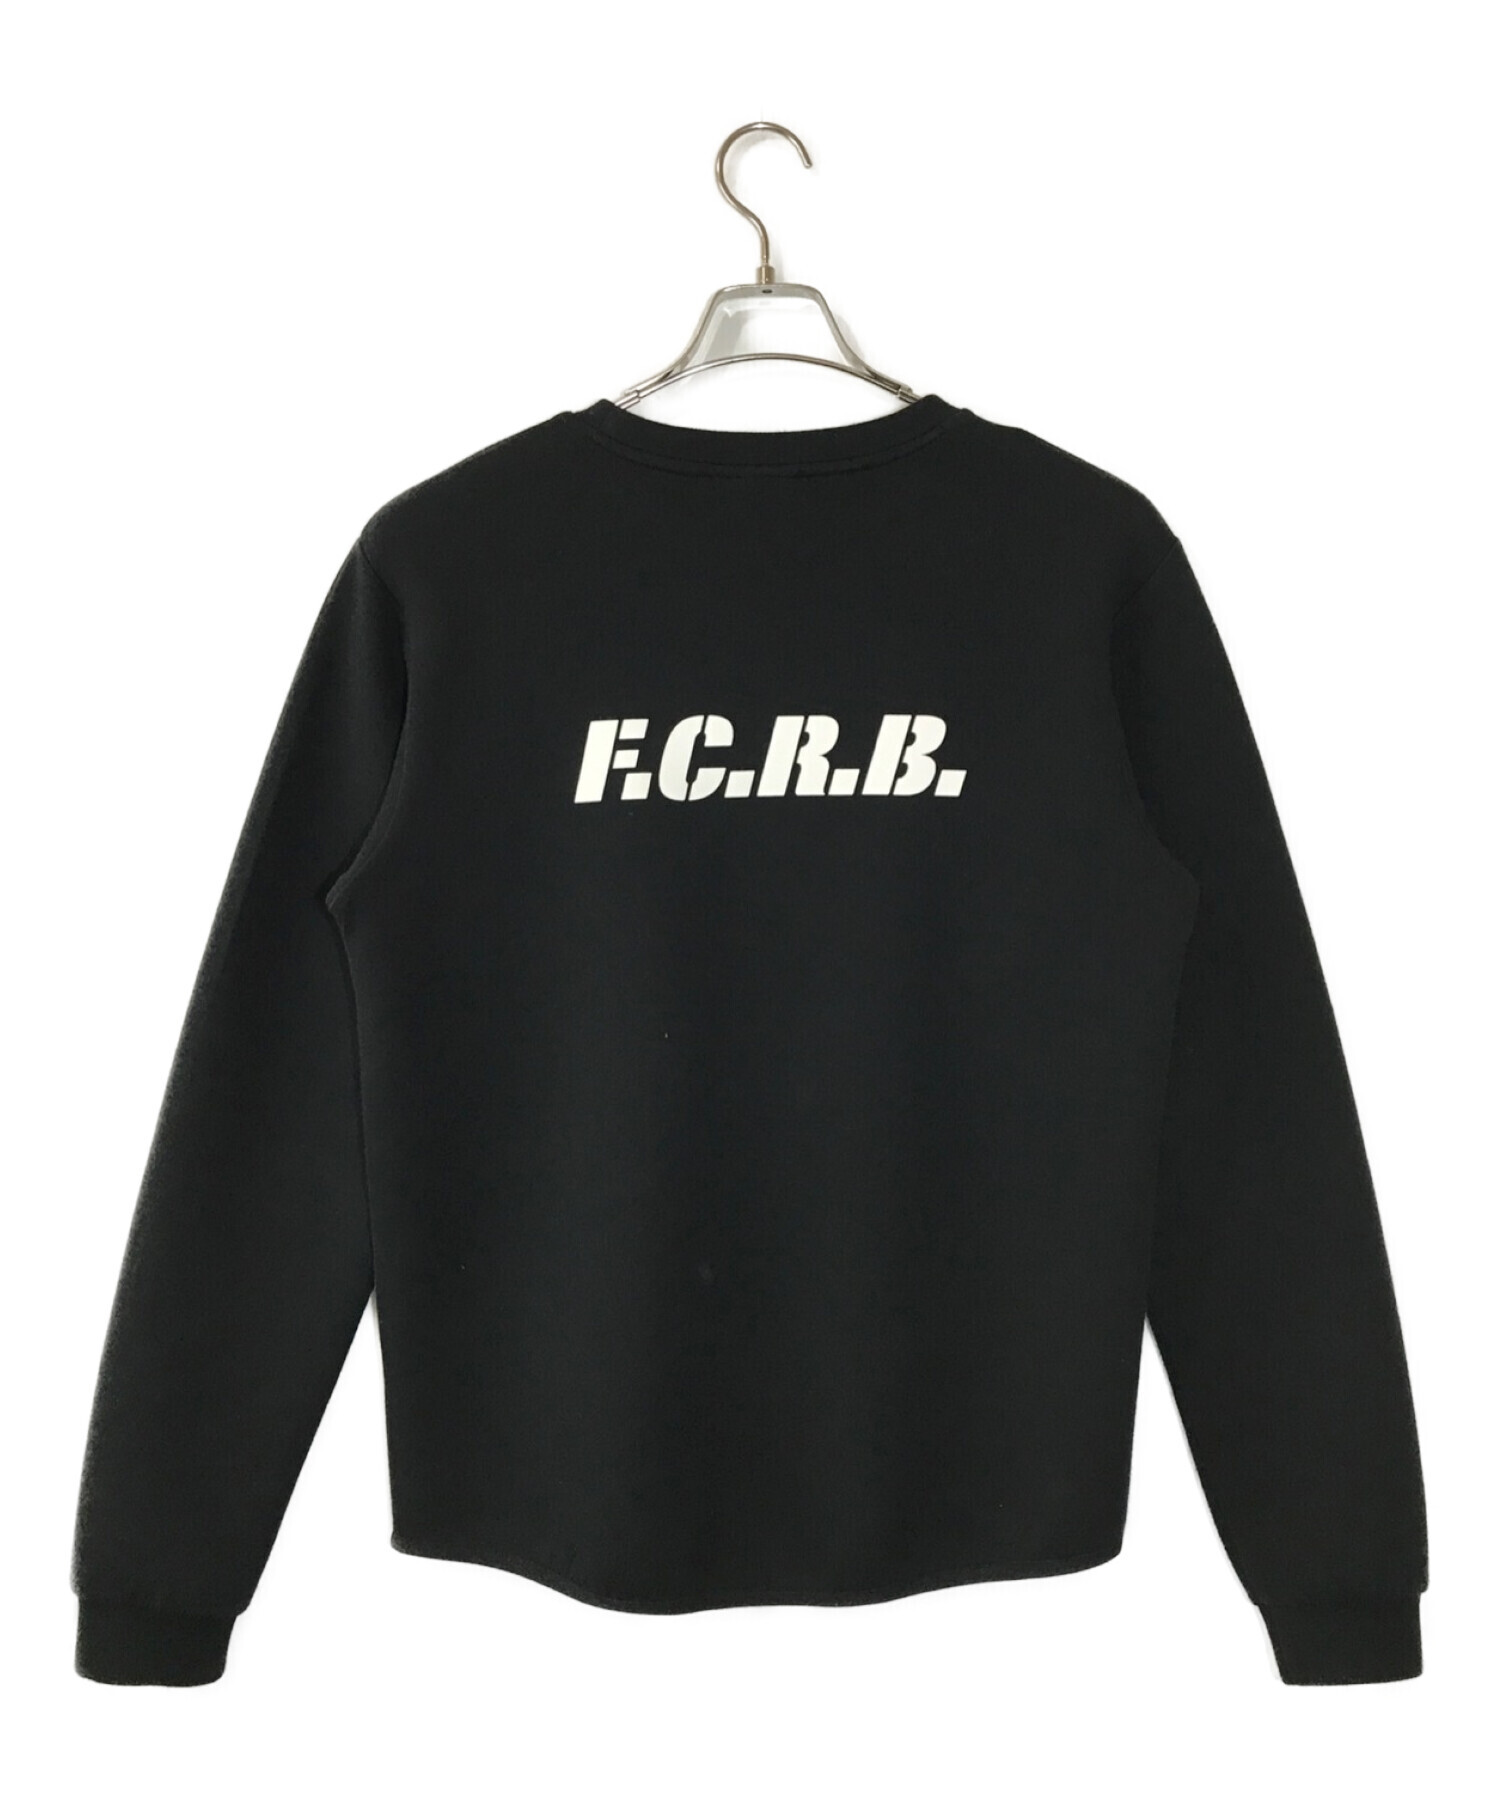 F.C.R.B. (エフシーアールビー) SWEAT CREWNECK TOP ブラック サイズ:S